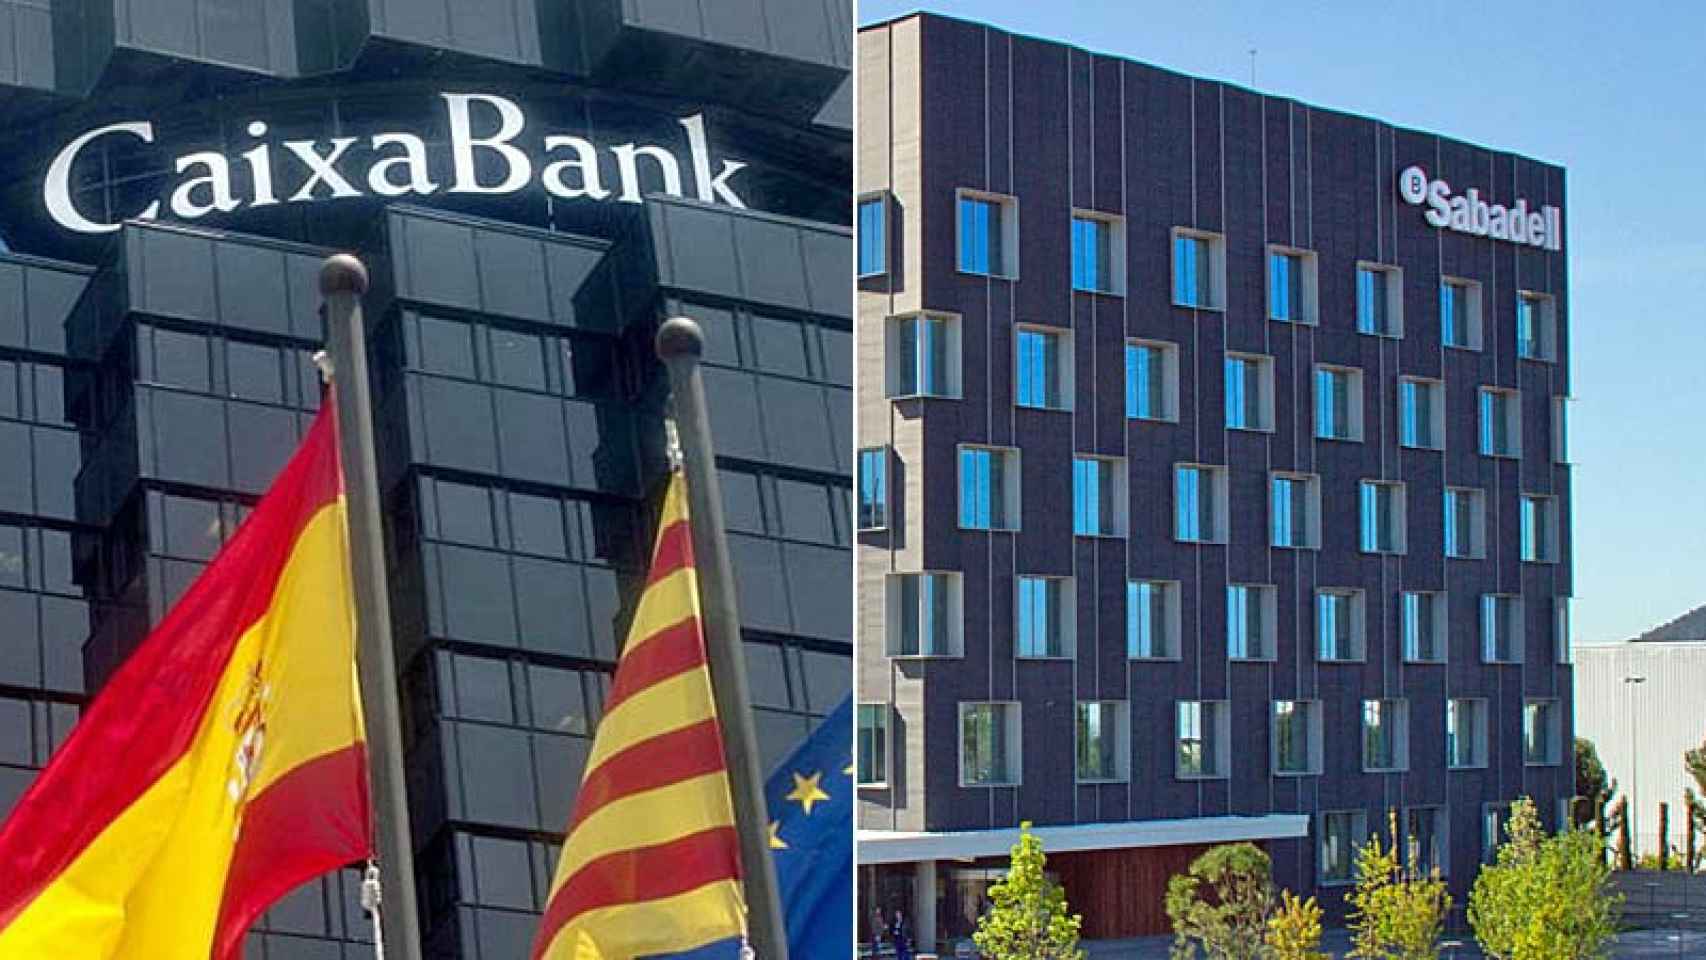 Los edificios de Caixabank y del Banco Sabadell en Barcelona / FOTOMONTAJE DE CG